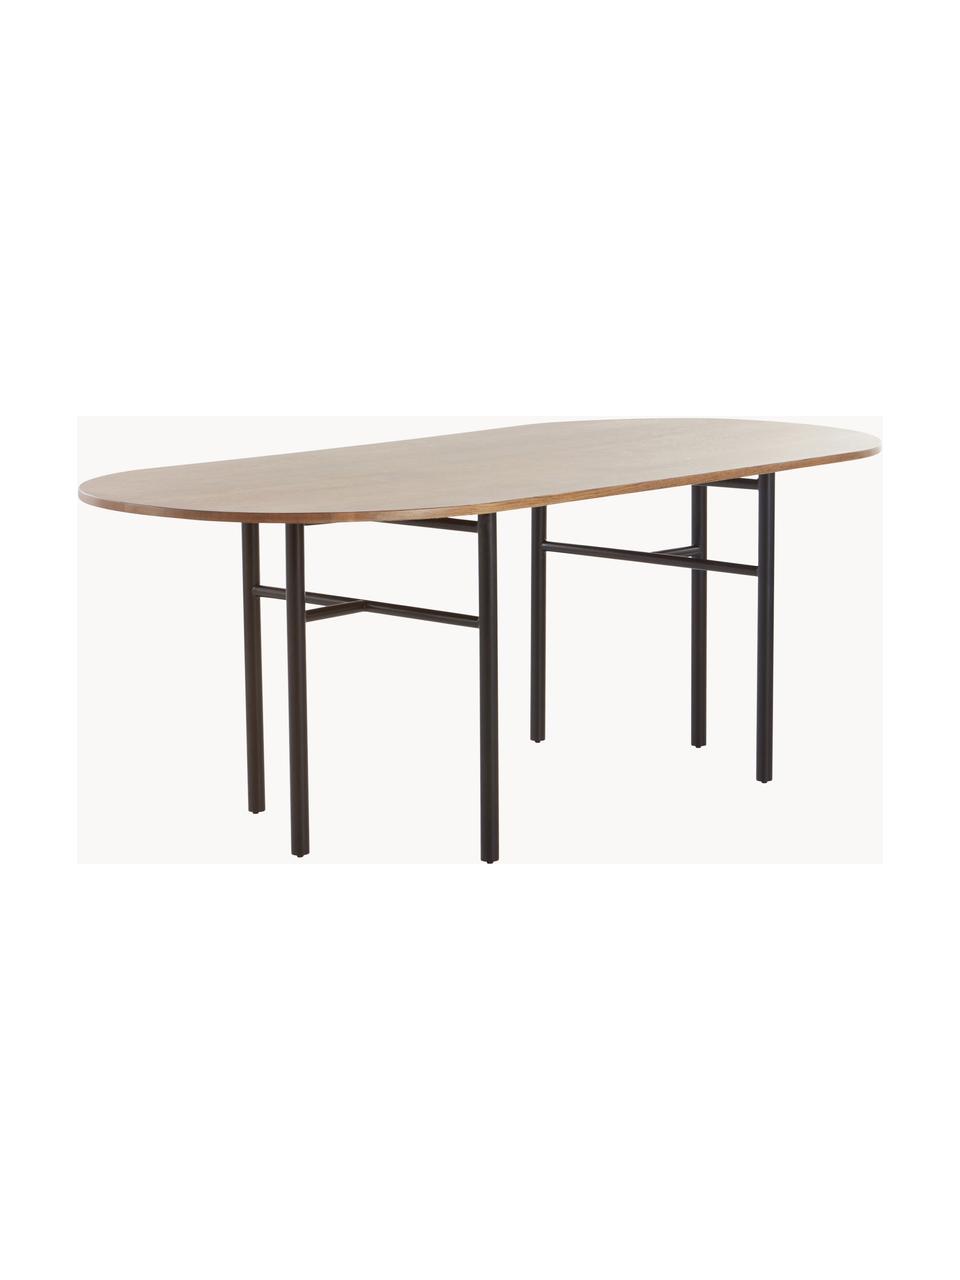 Ovaler Esstisch Vejby aus Eichenholz, 210 x 95 cm, Tischplatte: Eichenholz, Beine: Metall, lackiert, Eichenholz, B 210 x T 95 cm